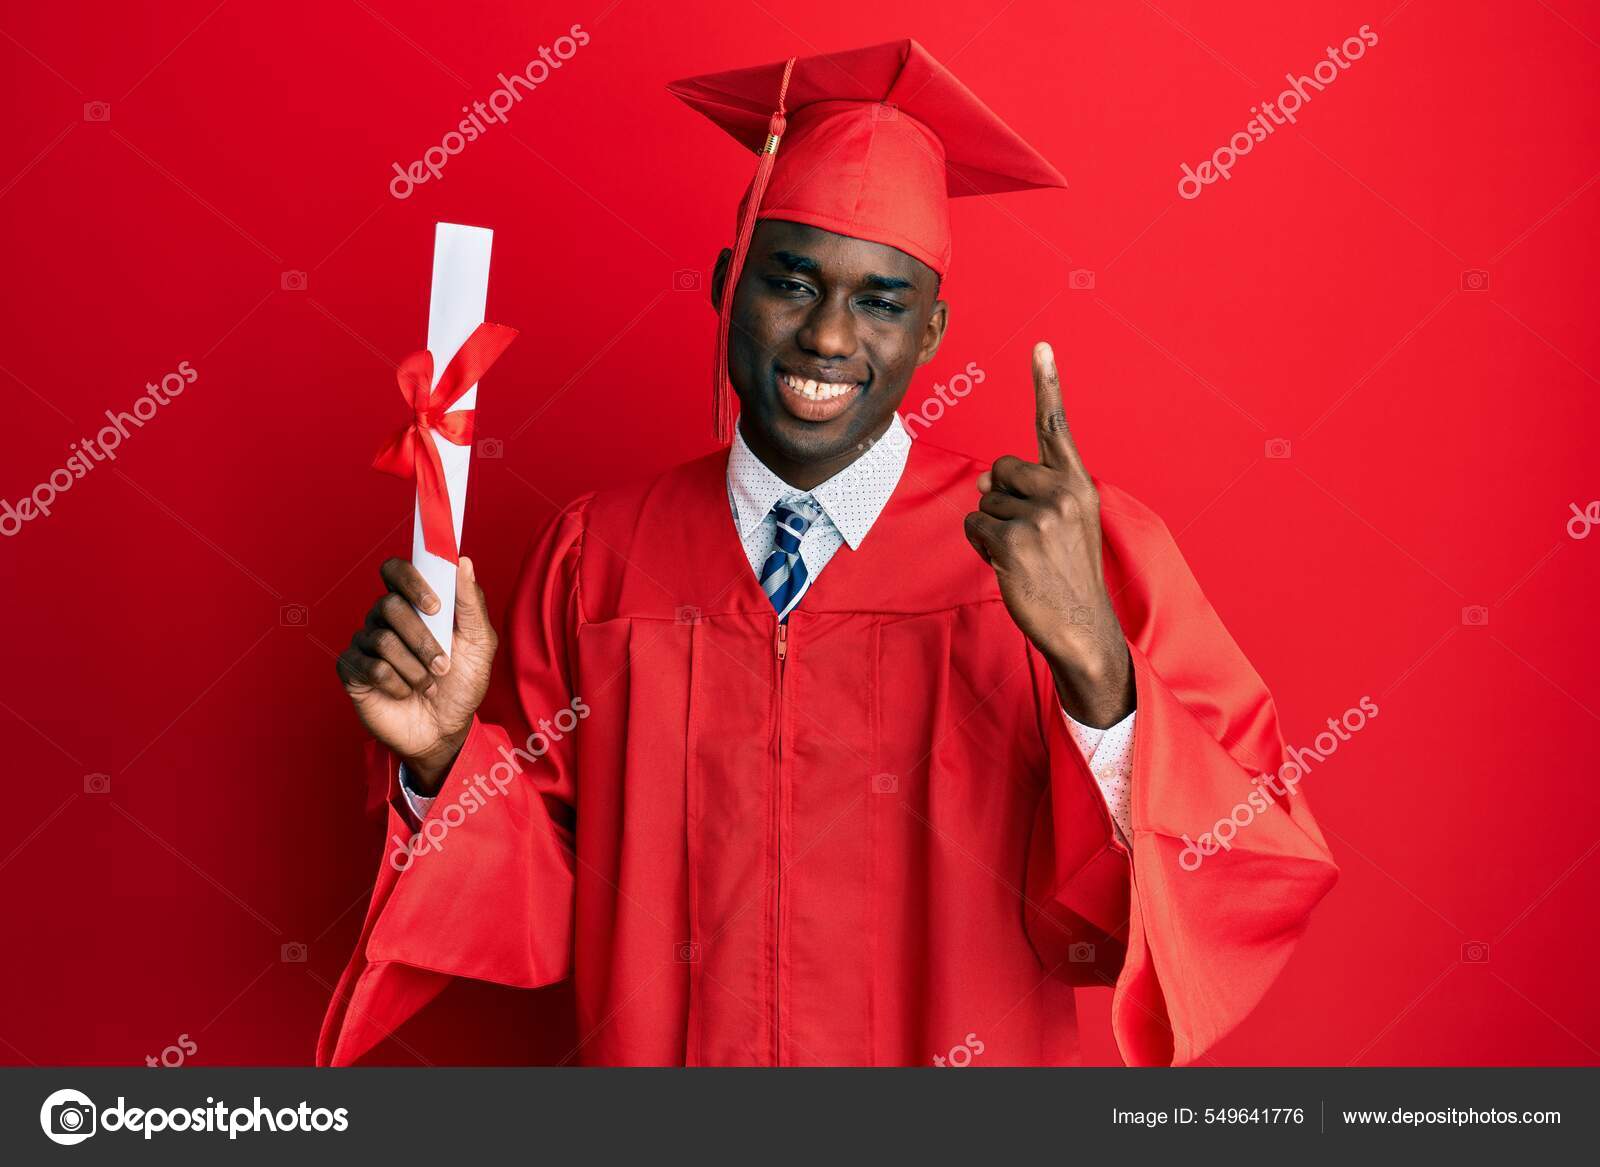 1PC Mortar board photo props graduation hat student graduation cap | eBay